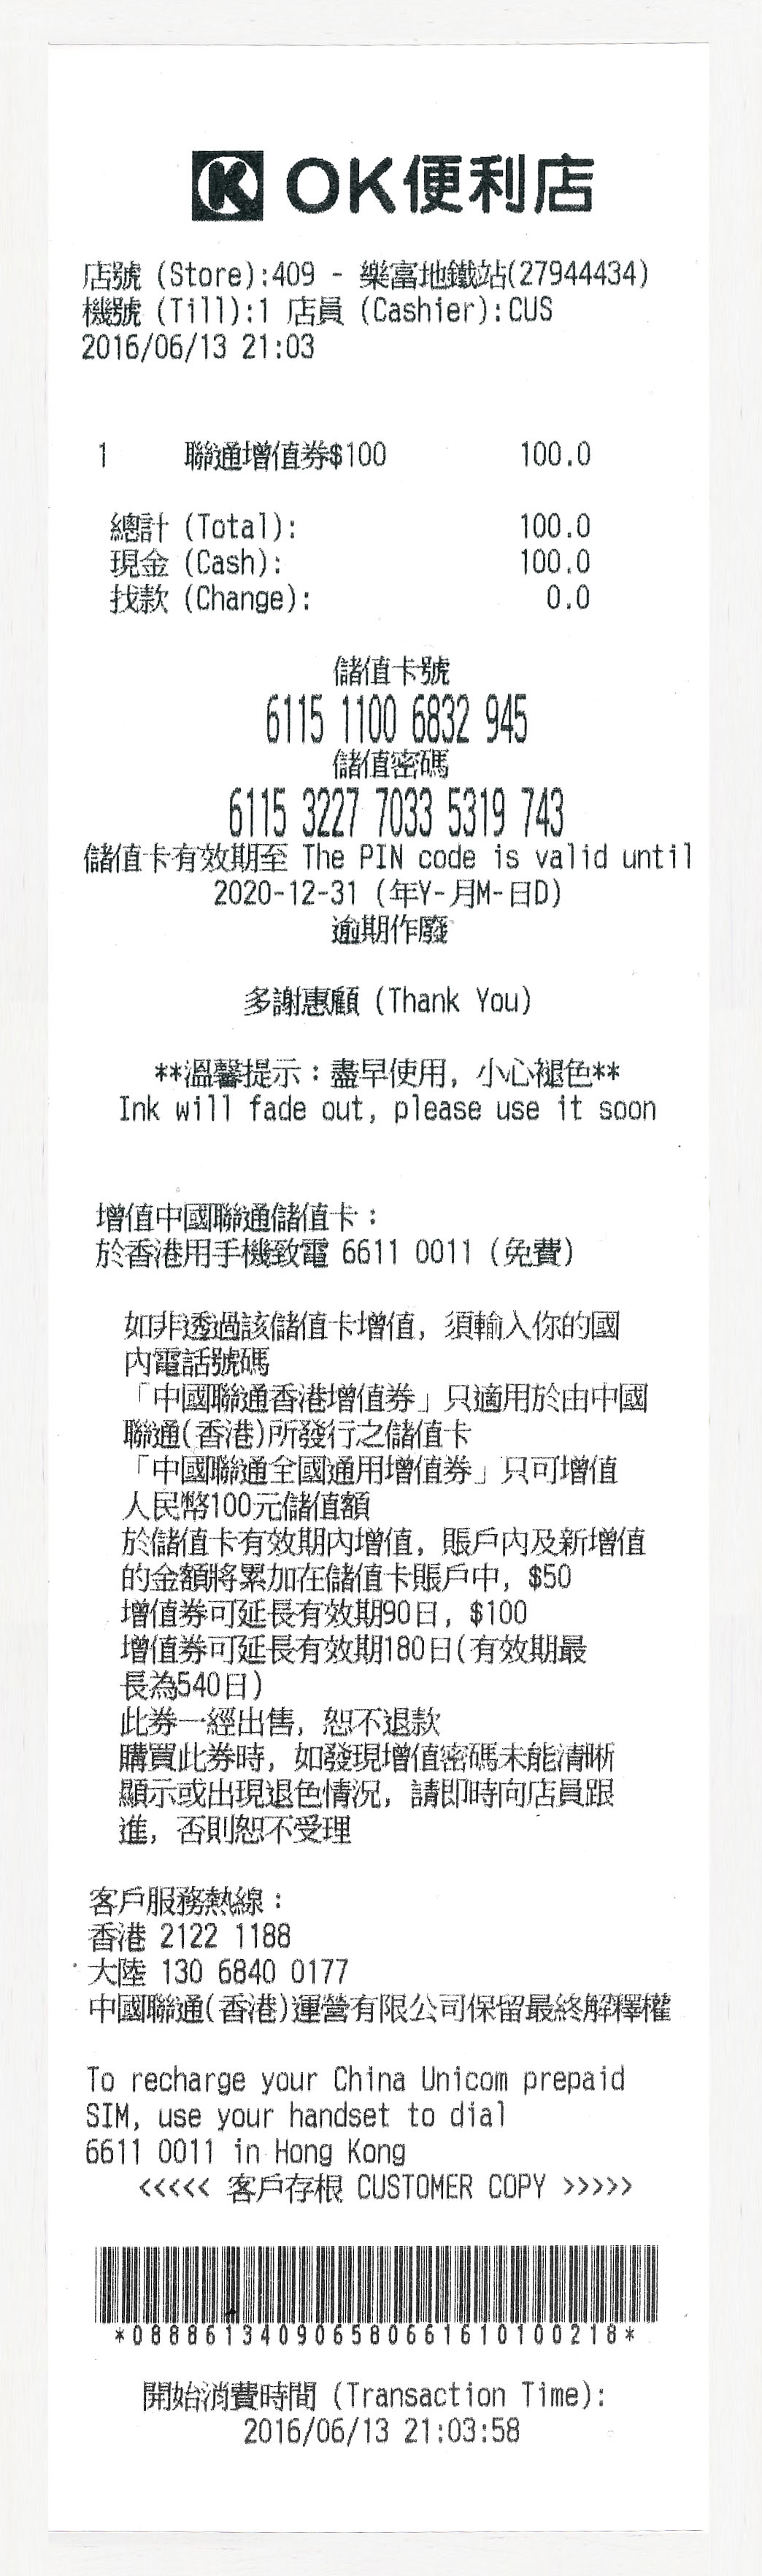 中國聯通(香港) China Unicom HK 跨境王3G加強版一卡兩號增值充值儲值卡方法問題 cross border king dual-number prepaid sim card